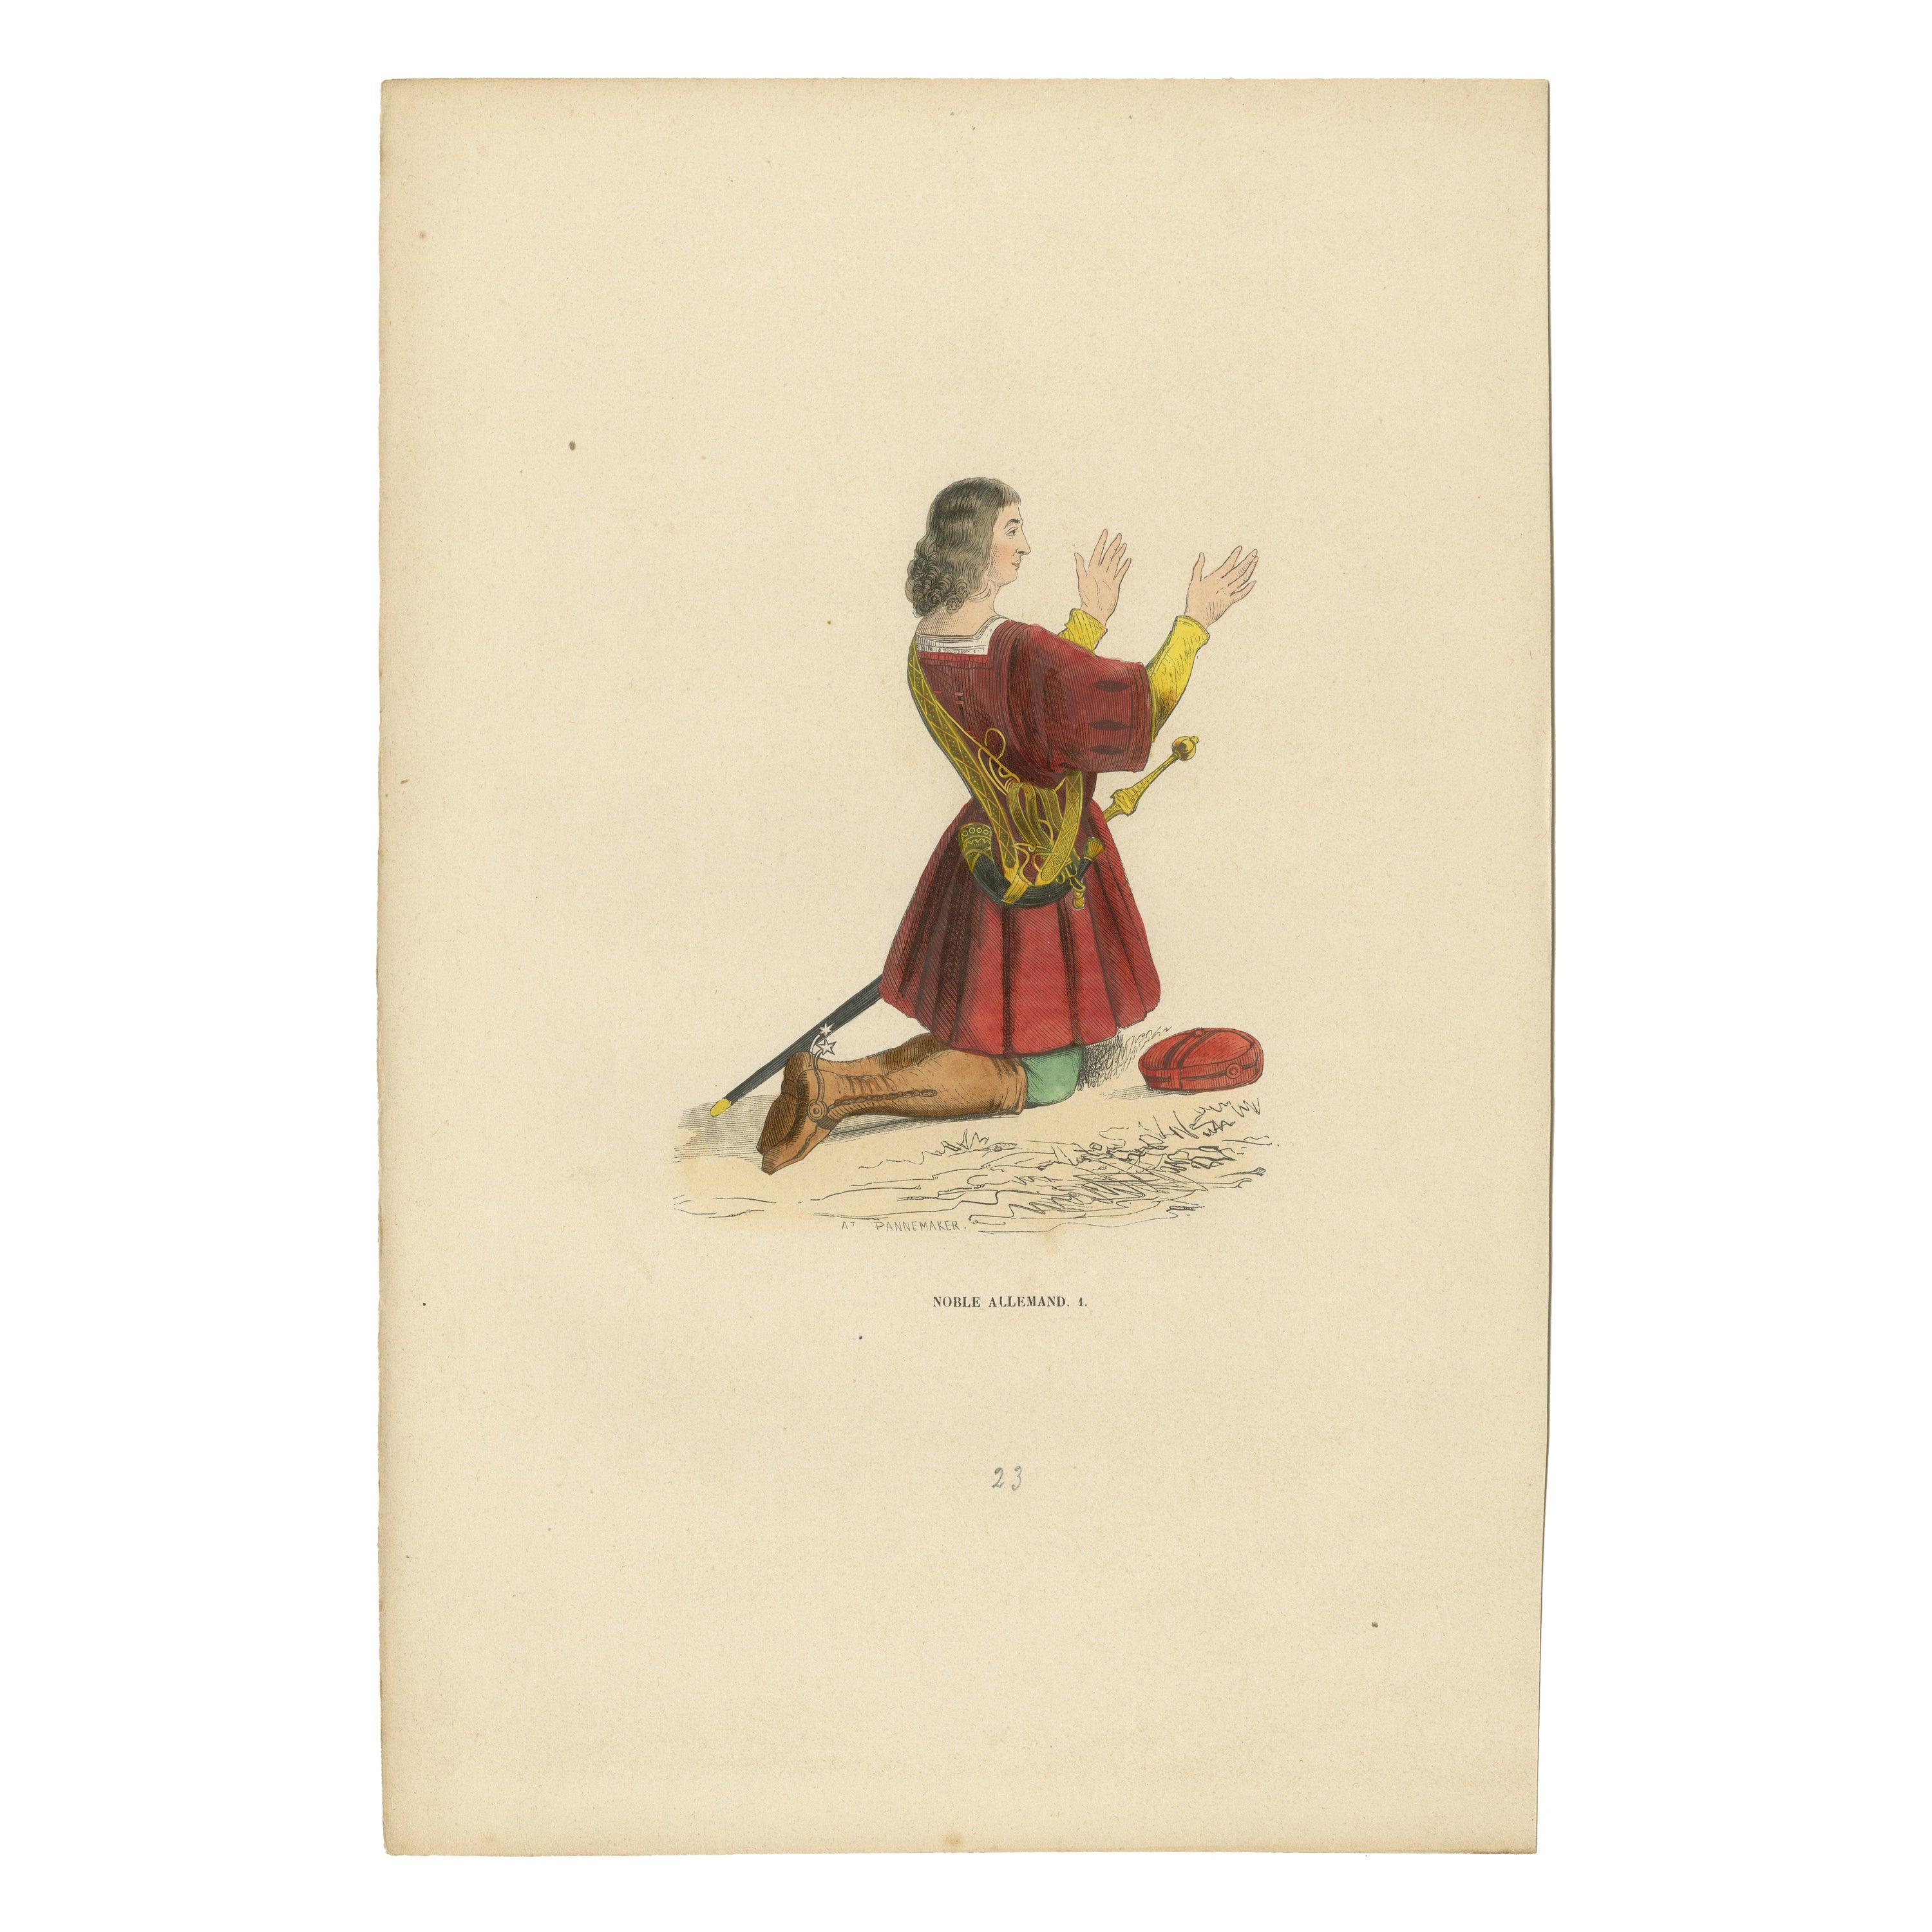 Le pli du noble : un aristocrate allemand en supplication, 1847